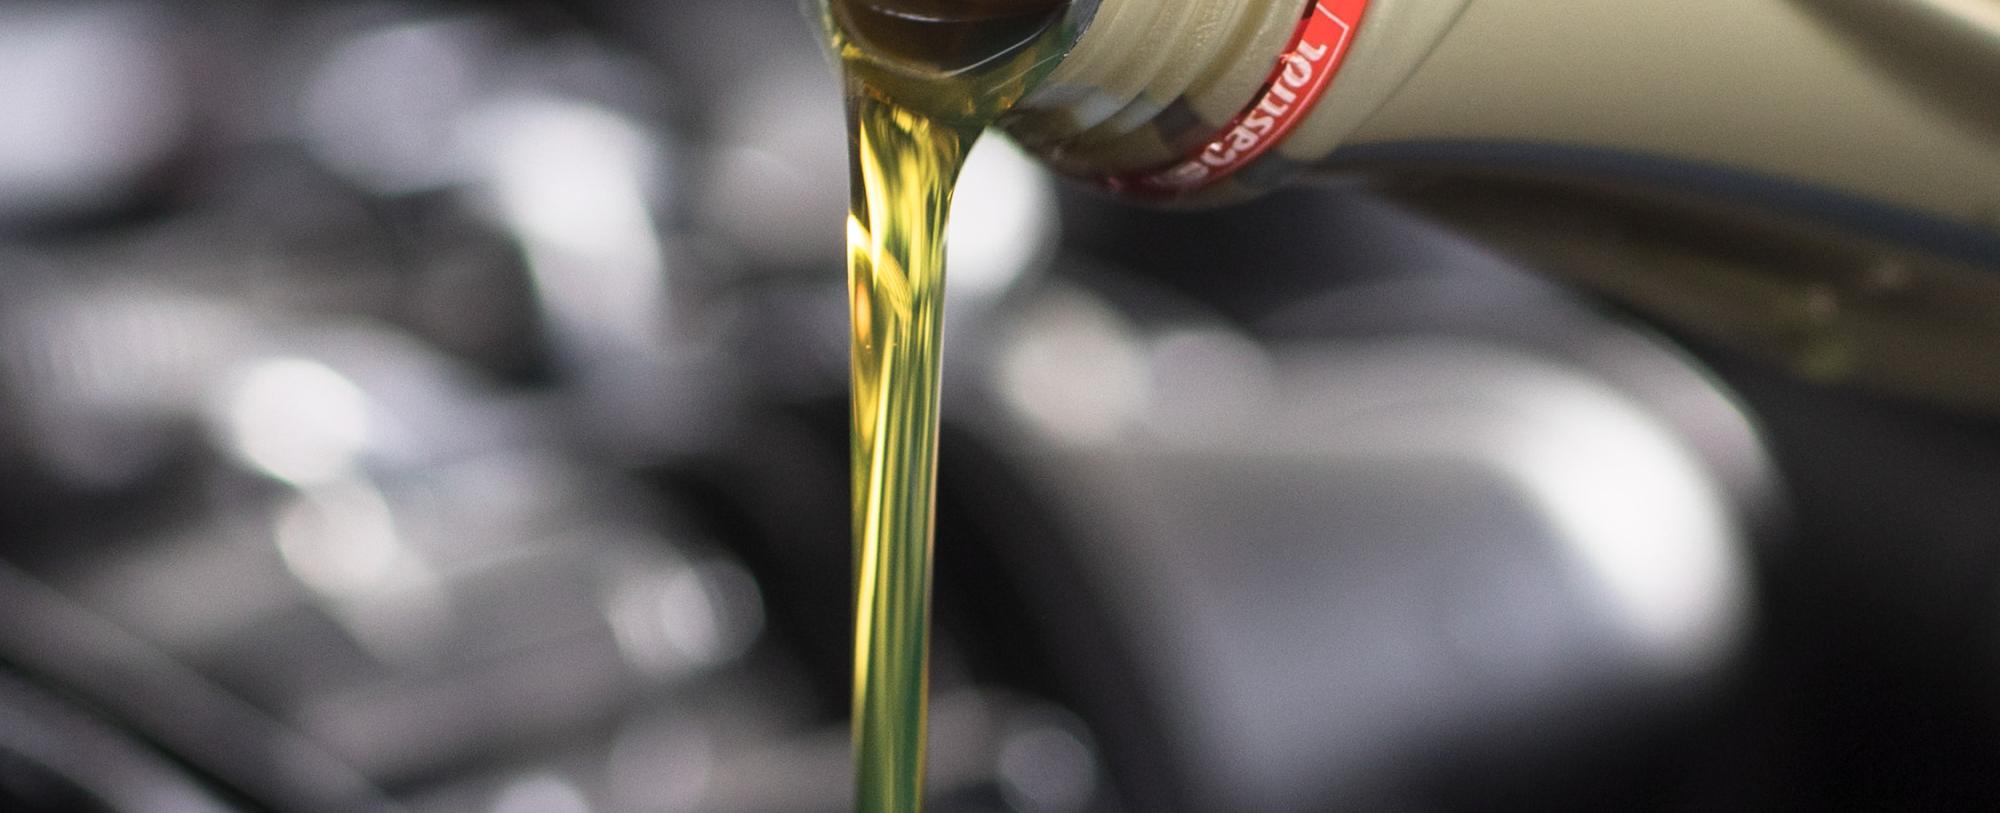 Wechsel von Ölfilter und Motoröl